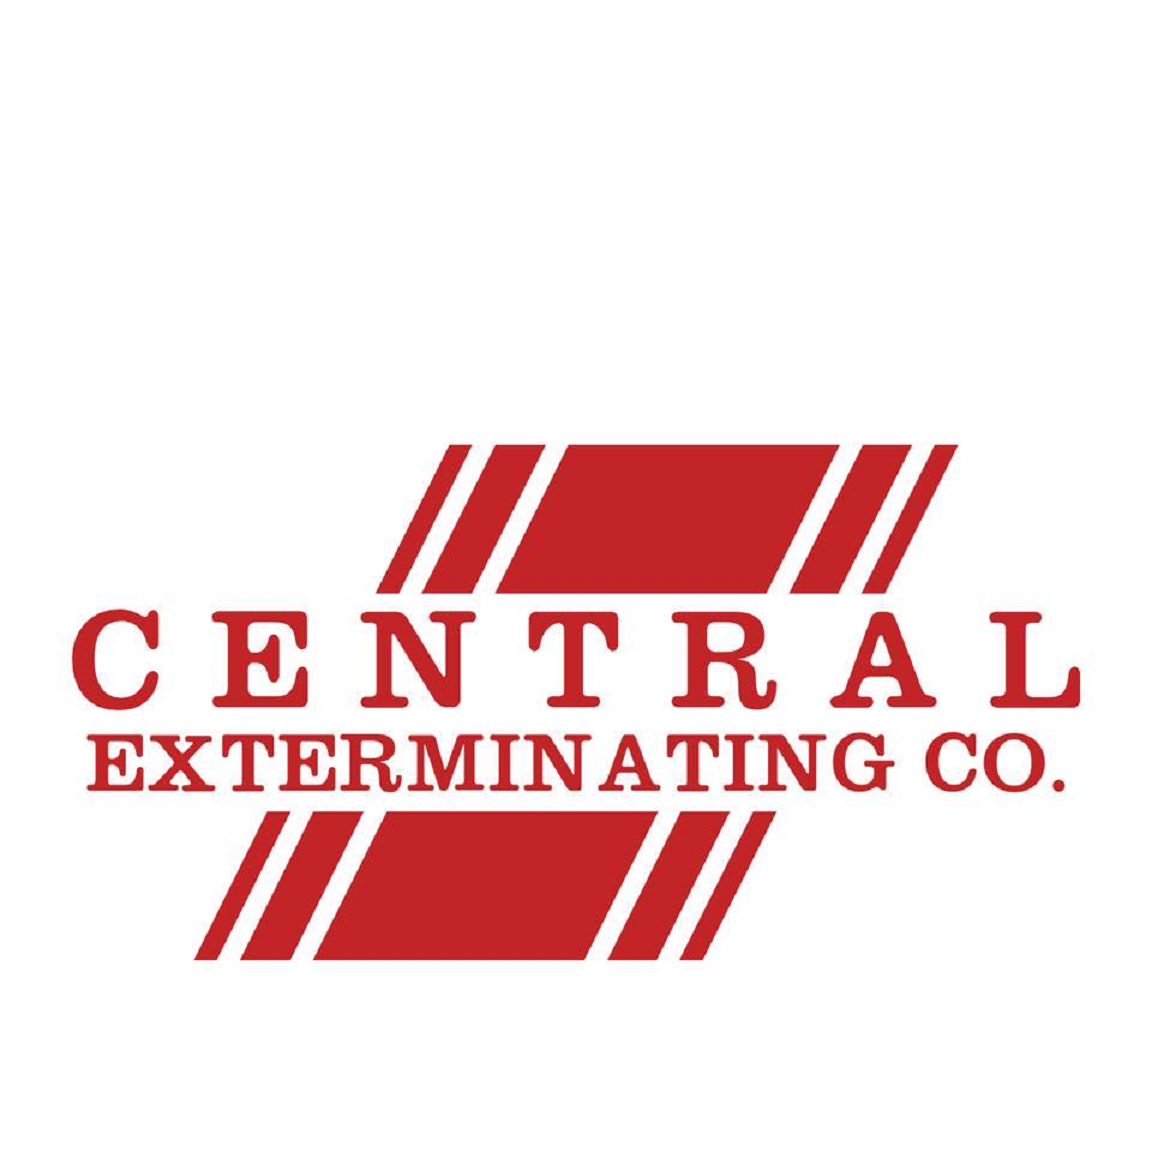 Central Exterminating Co. Logo